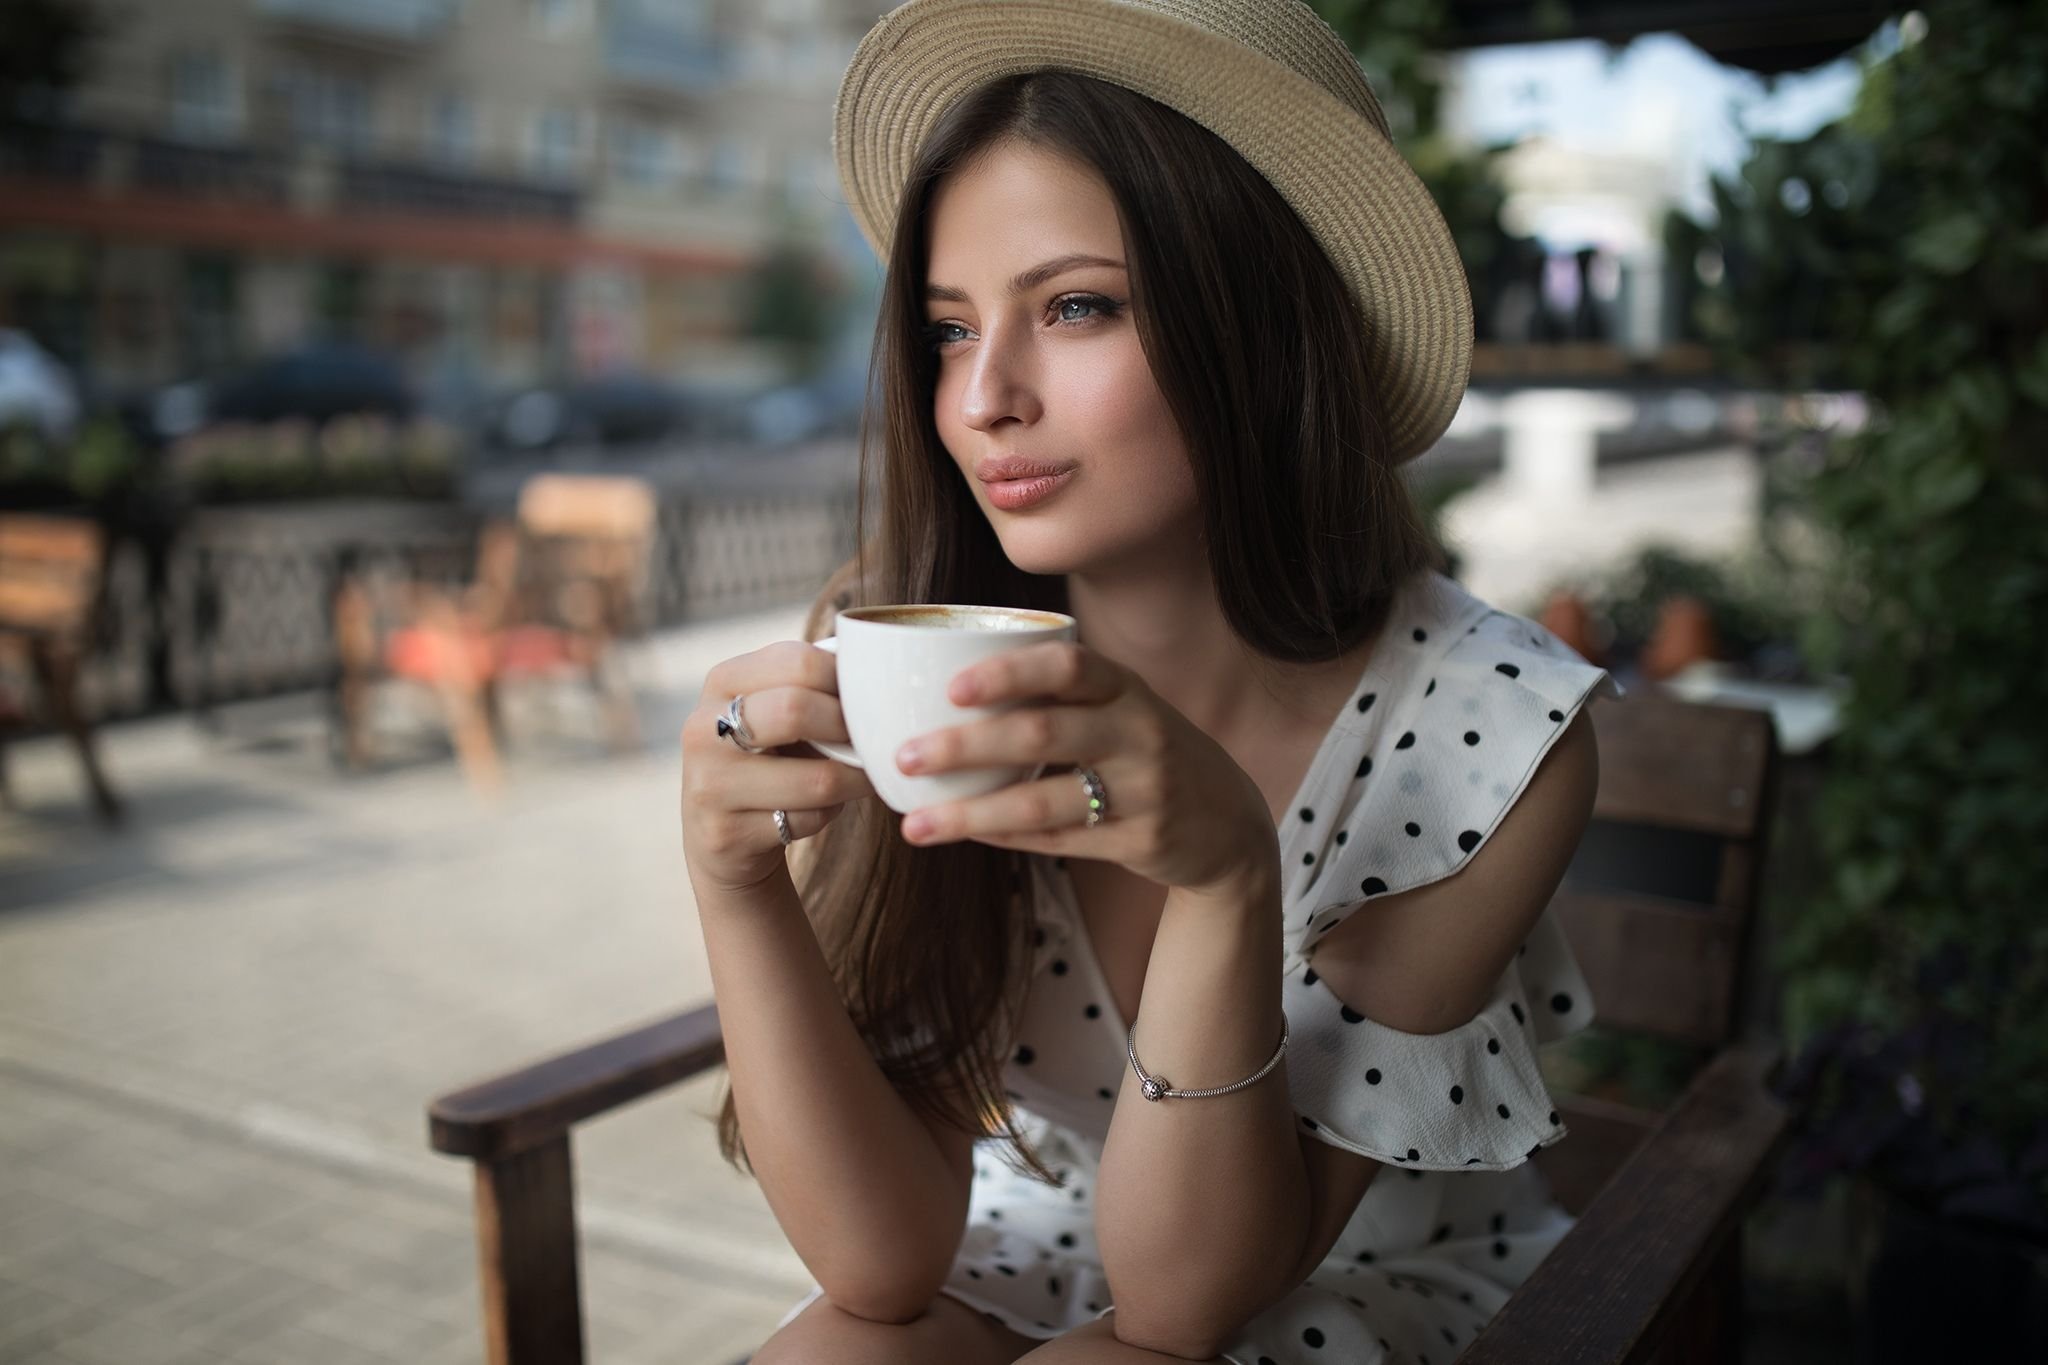 Красивые фото девушки с чашкой кофе